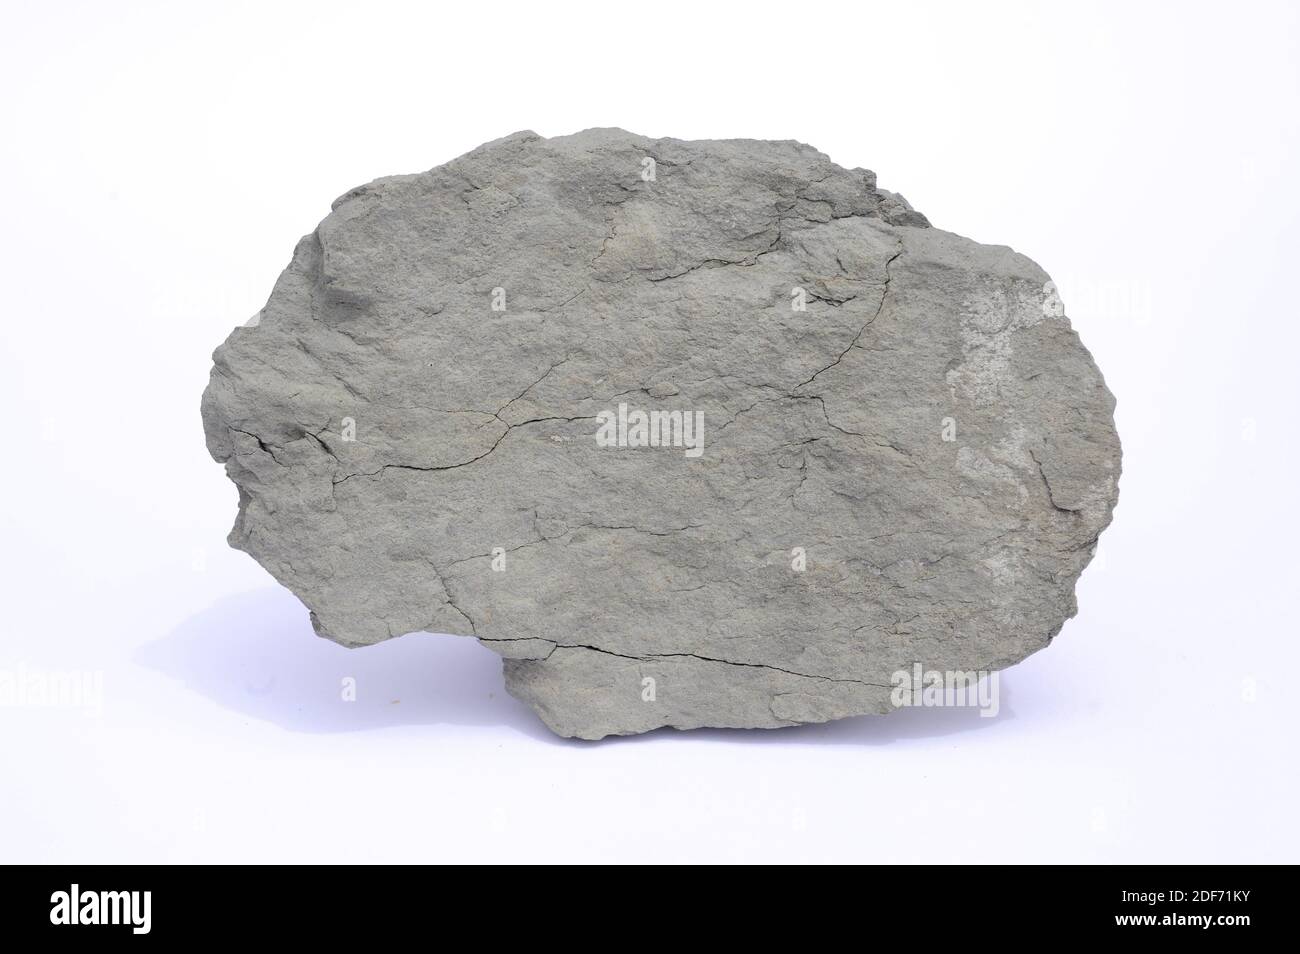 Mergel oder Mergel ist ein Sedimentgestein, das aus Kalkstein und Ton  besteht. Diese Probe kommt in der Nähe von Tona, Provinz Barcelona,  Katalonien, Spanien Stockfotografie - Alamy